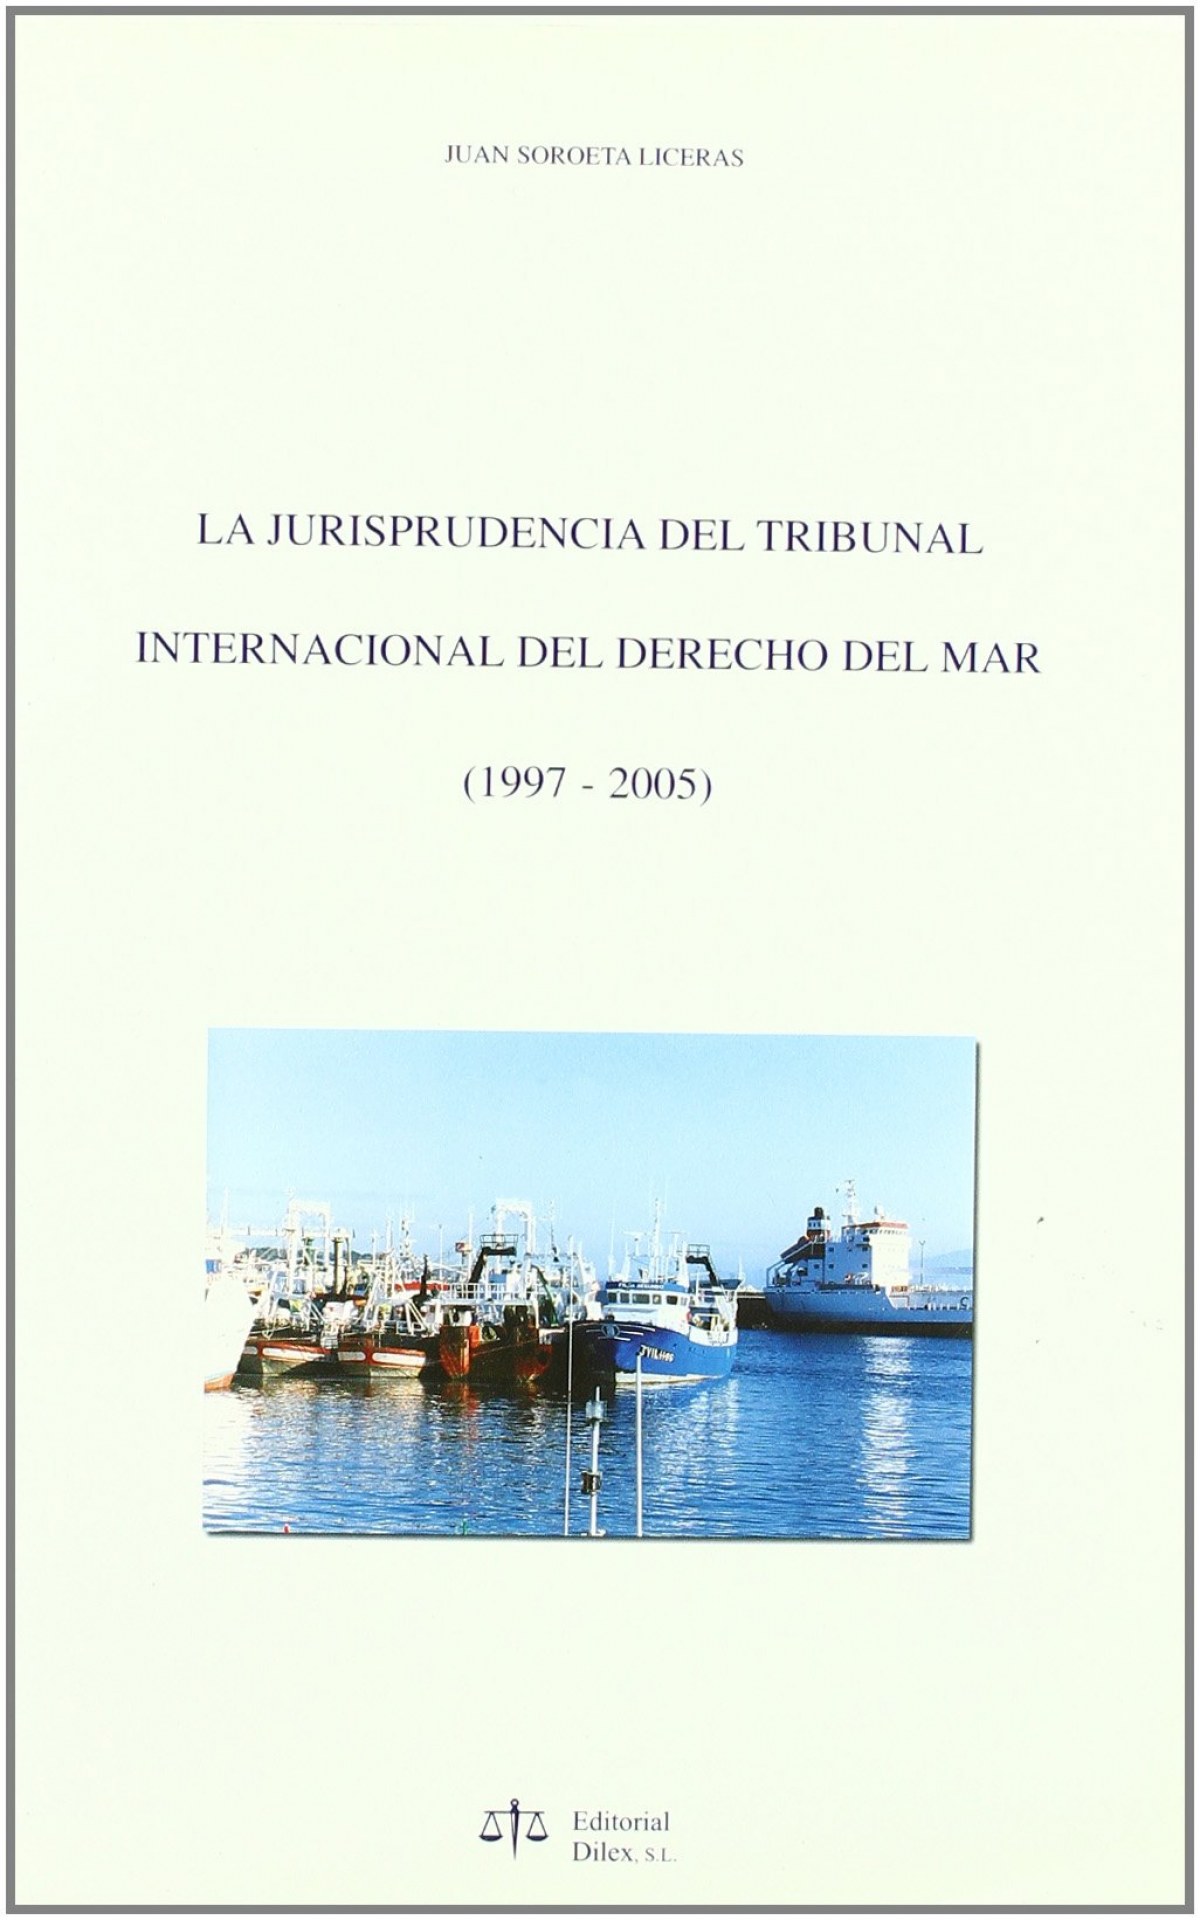 Jurispridencia del tribunal internacional sobre derecho mar - Soroeta Ligeras, Juan